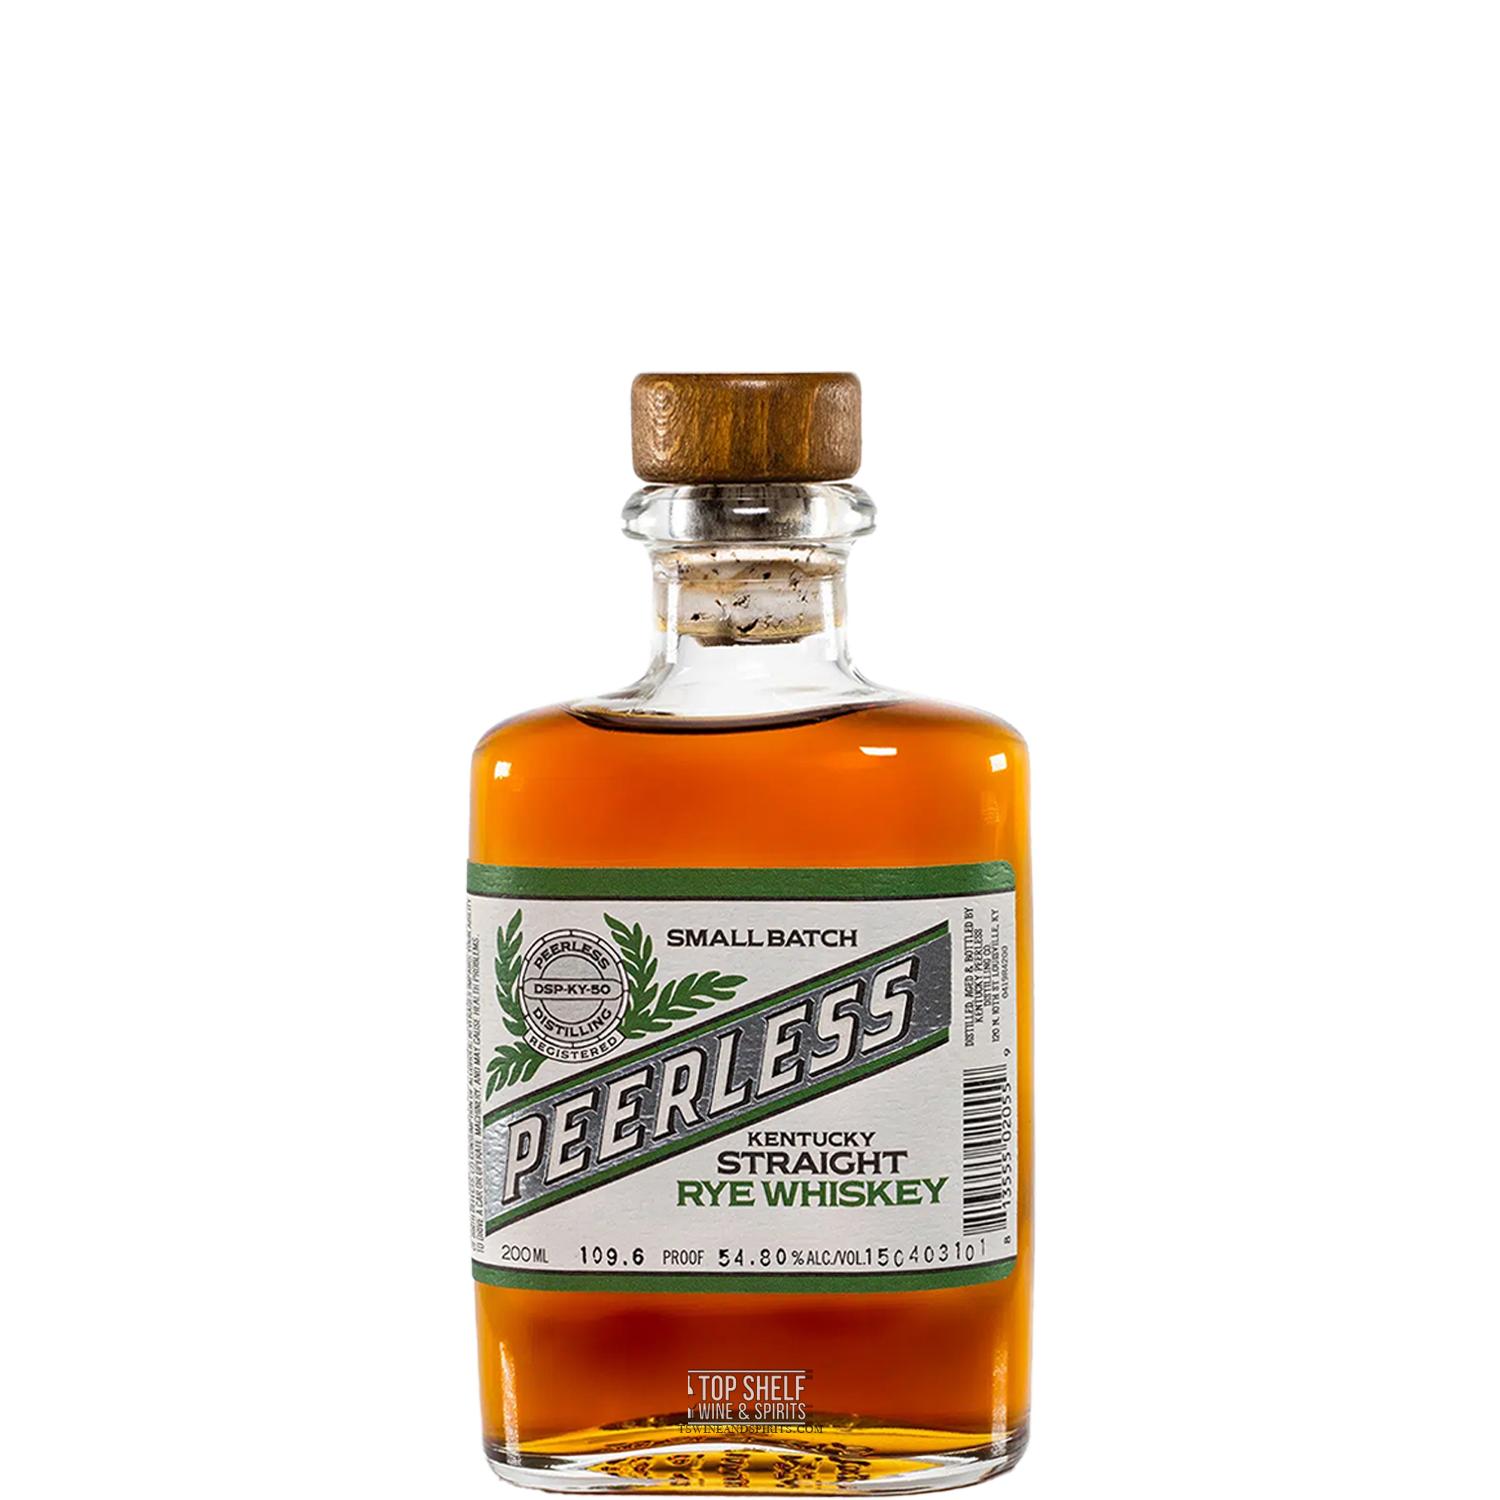 Peerless Straight Rye Whiskey 200mL